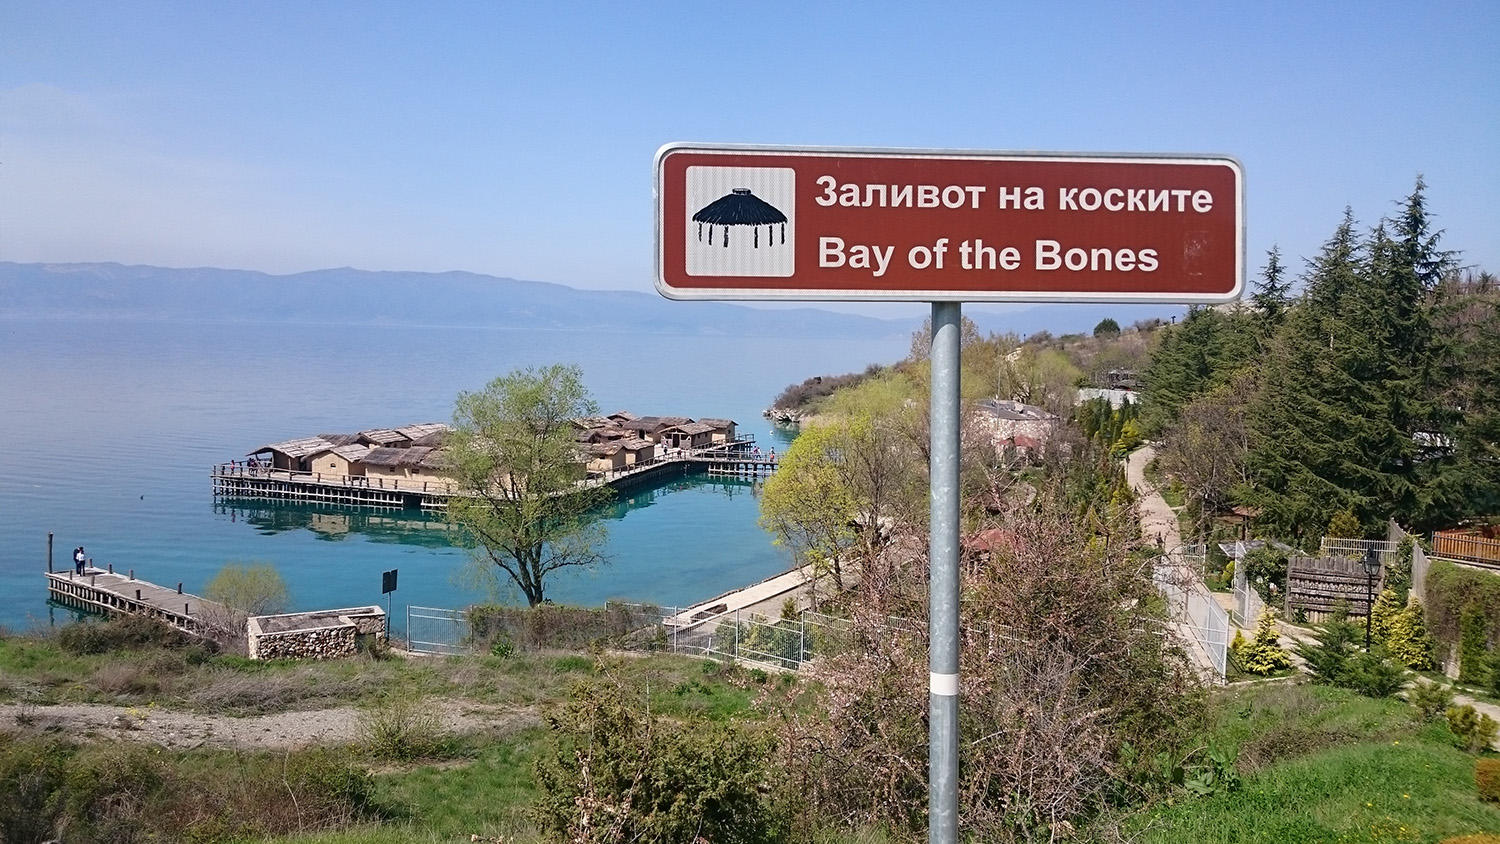 Bay of bones